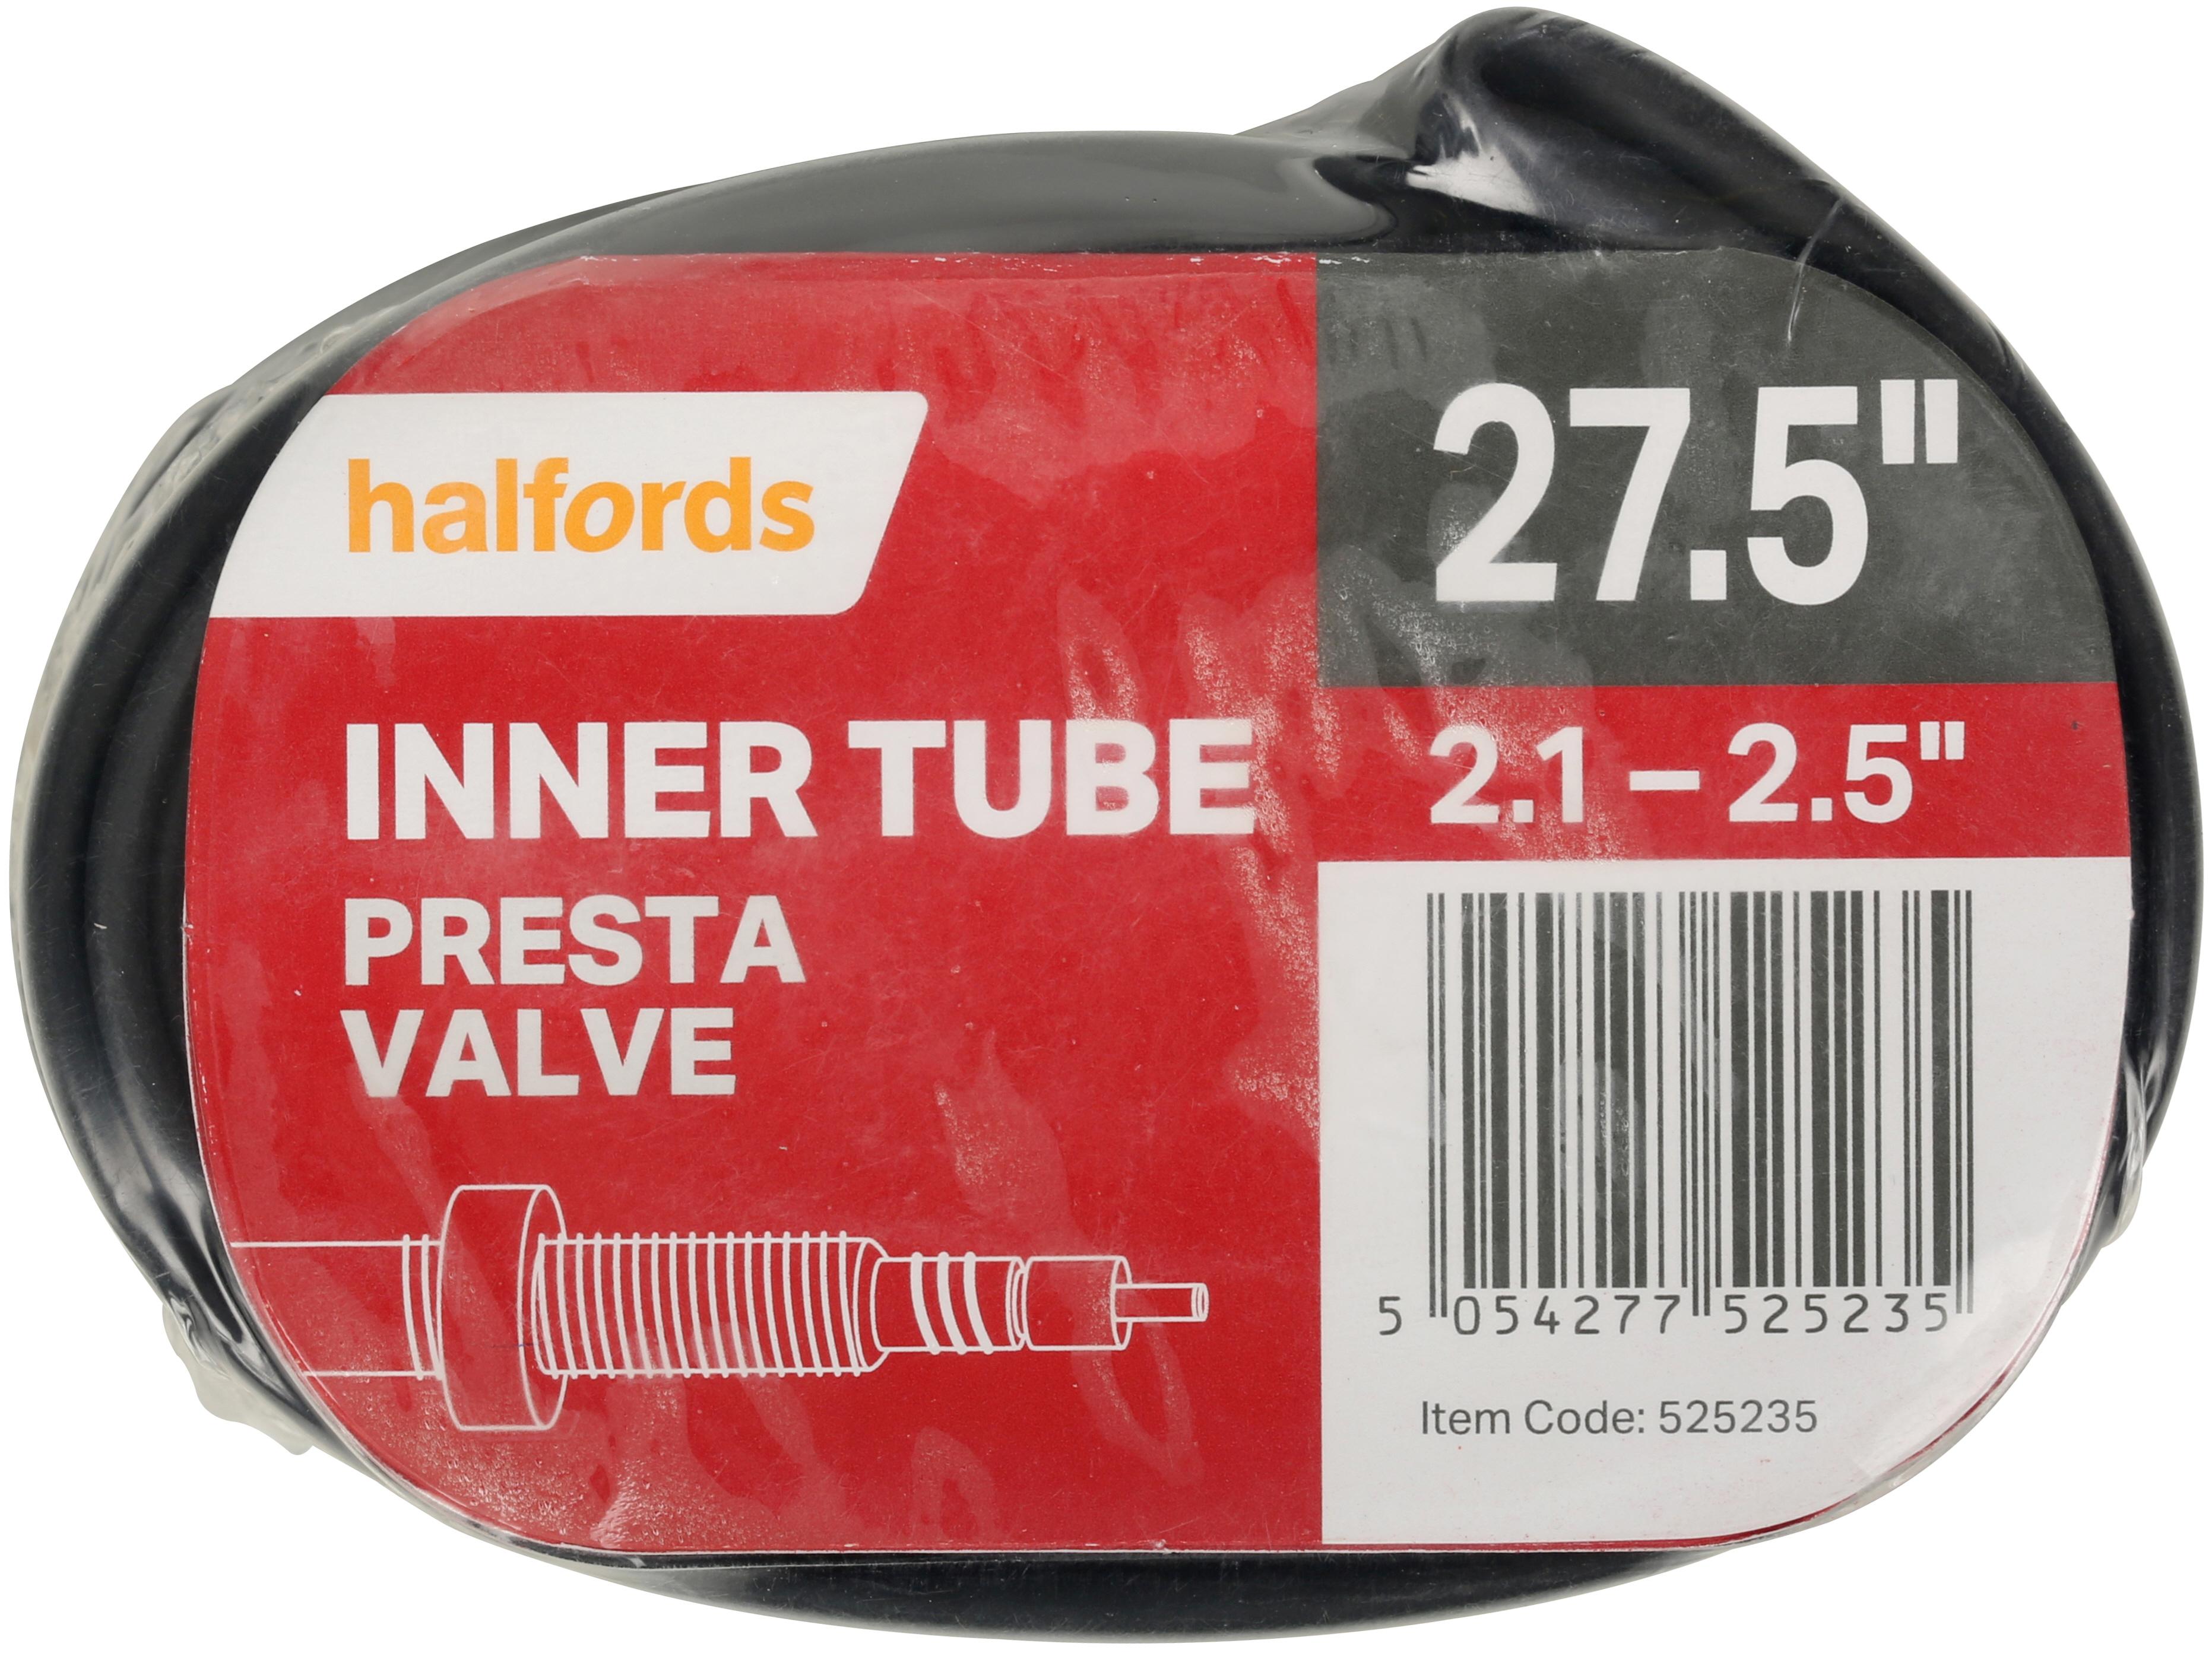 pram inner tube halfords